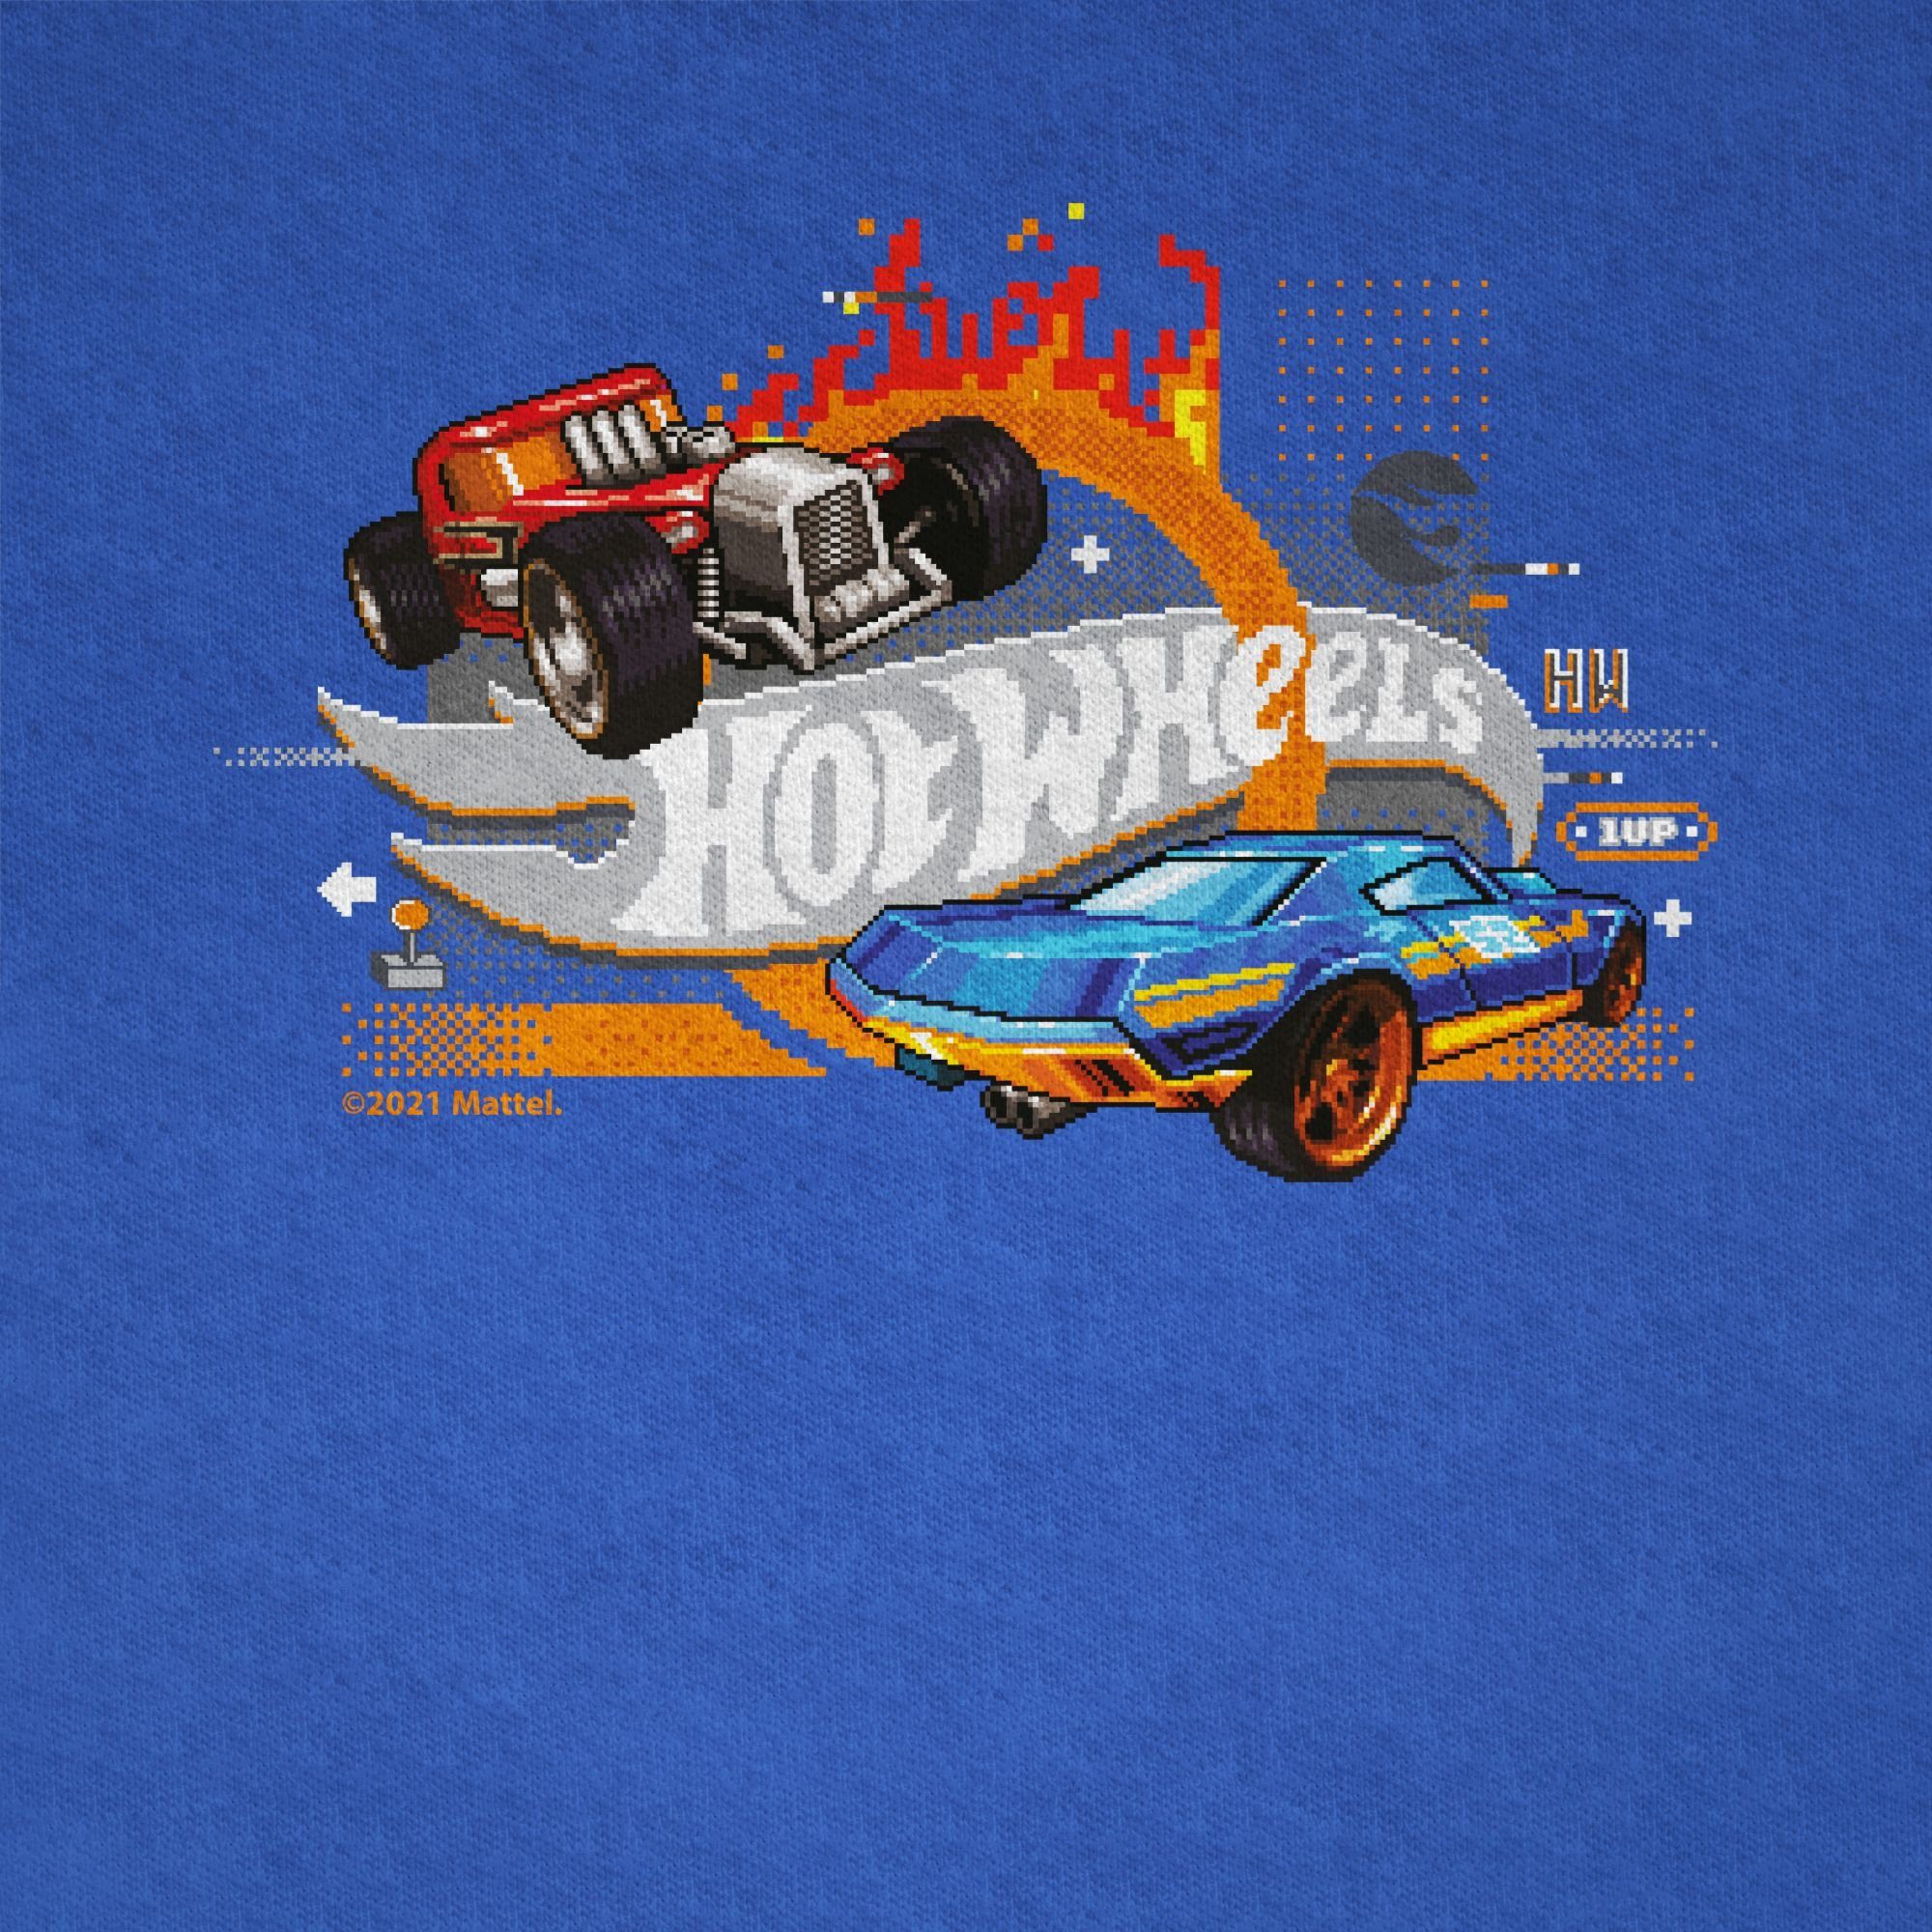 Shirtracer T-Shirt 8-Bit Logo Hot 02 Royalblau Jungen Wheels